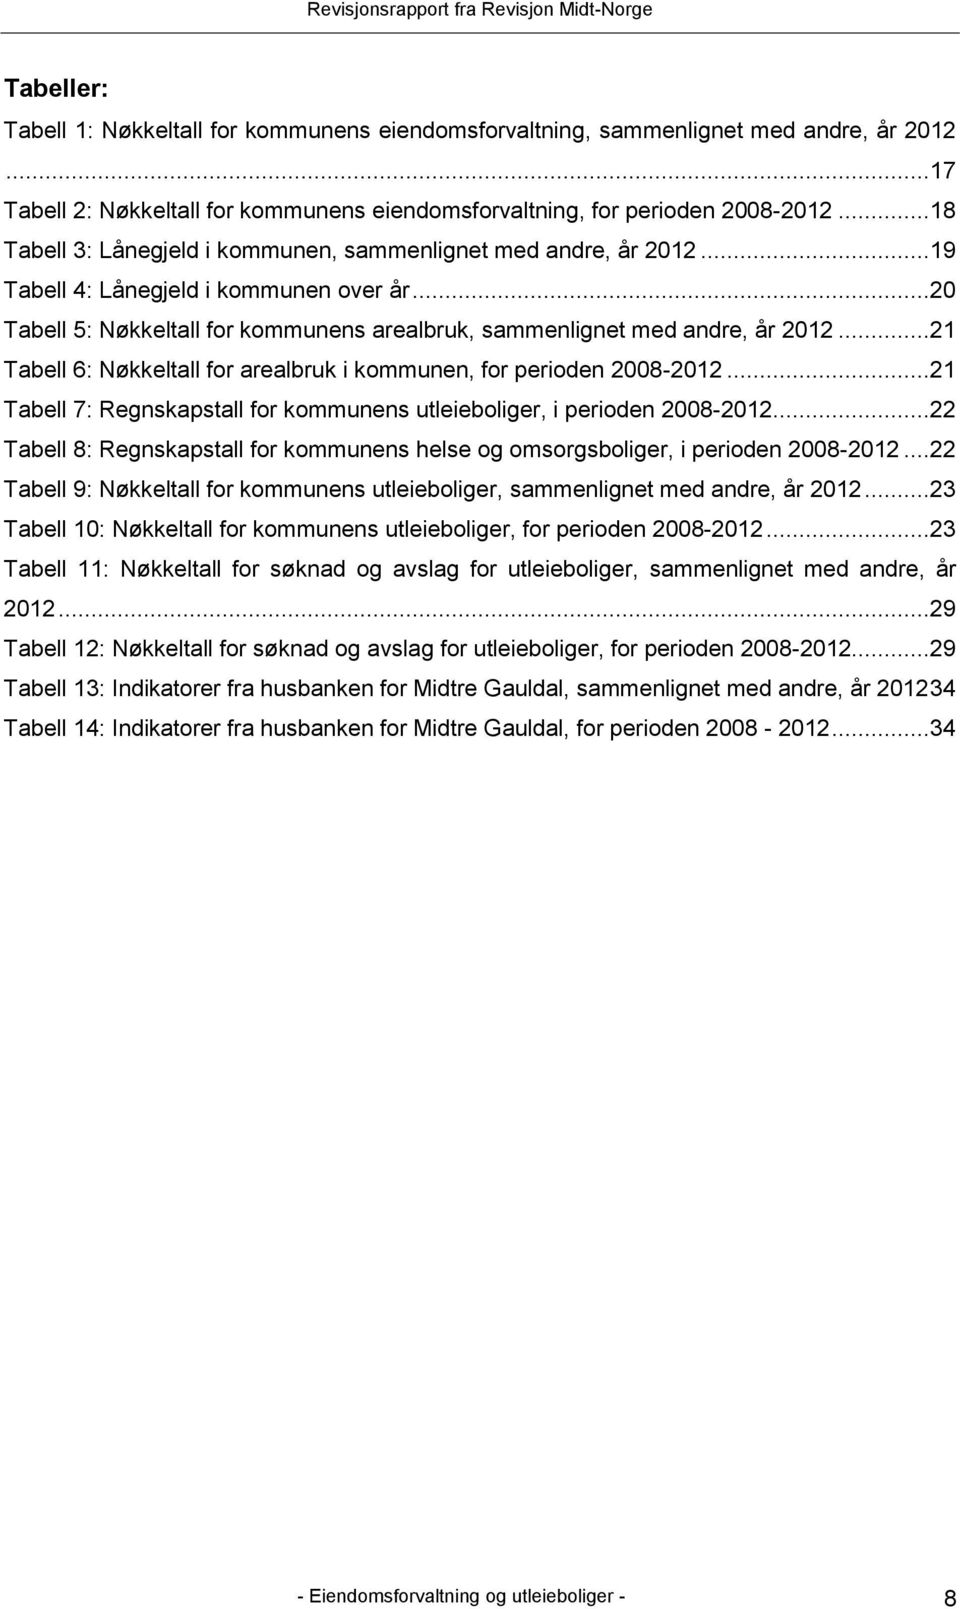 ..21 Tabell 6: Nøkkeltall for arealbruk i kommunen, for perioden 2008-2012...21 Tabell 7: Regnskapstall for kommunens utleieboliger, i perioden 2008-2012.